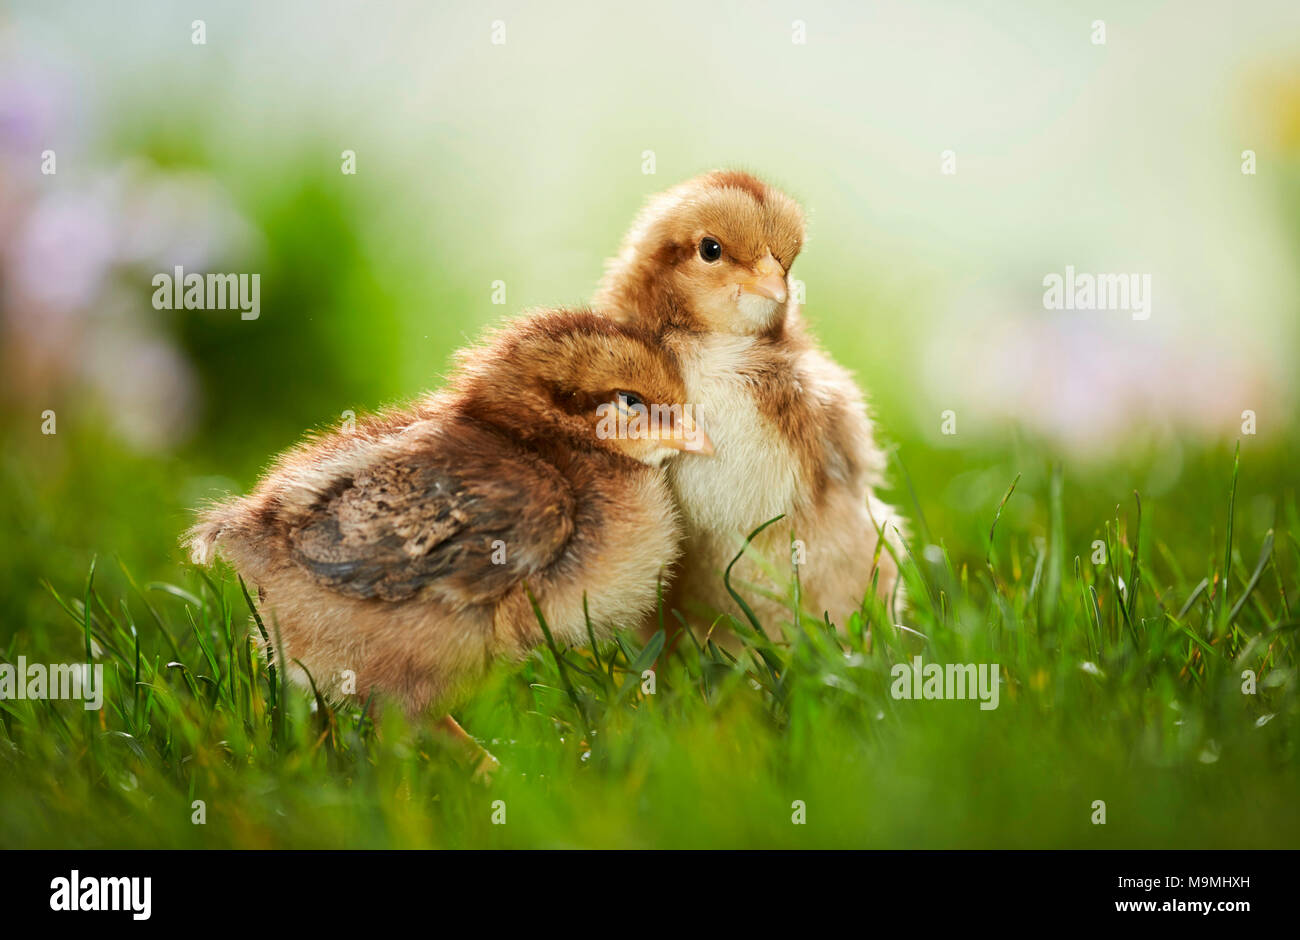 Welsummer poulet. Paire de poulets en prairie au printemps. Allemagne Banque D'Images